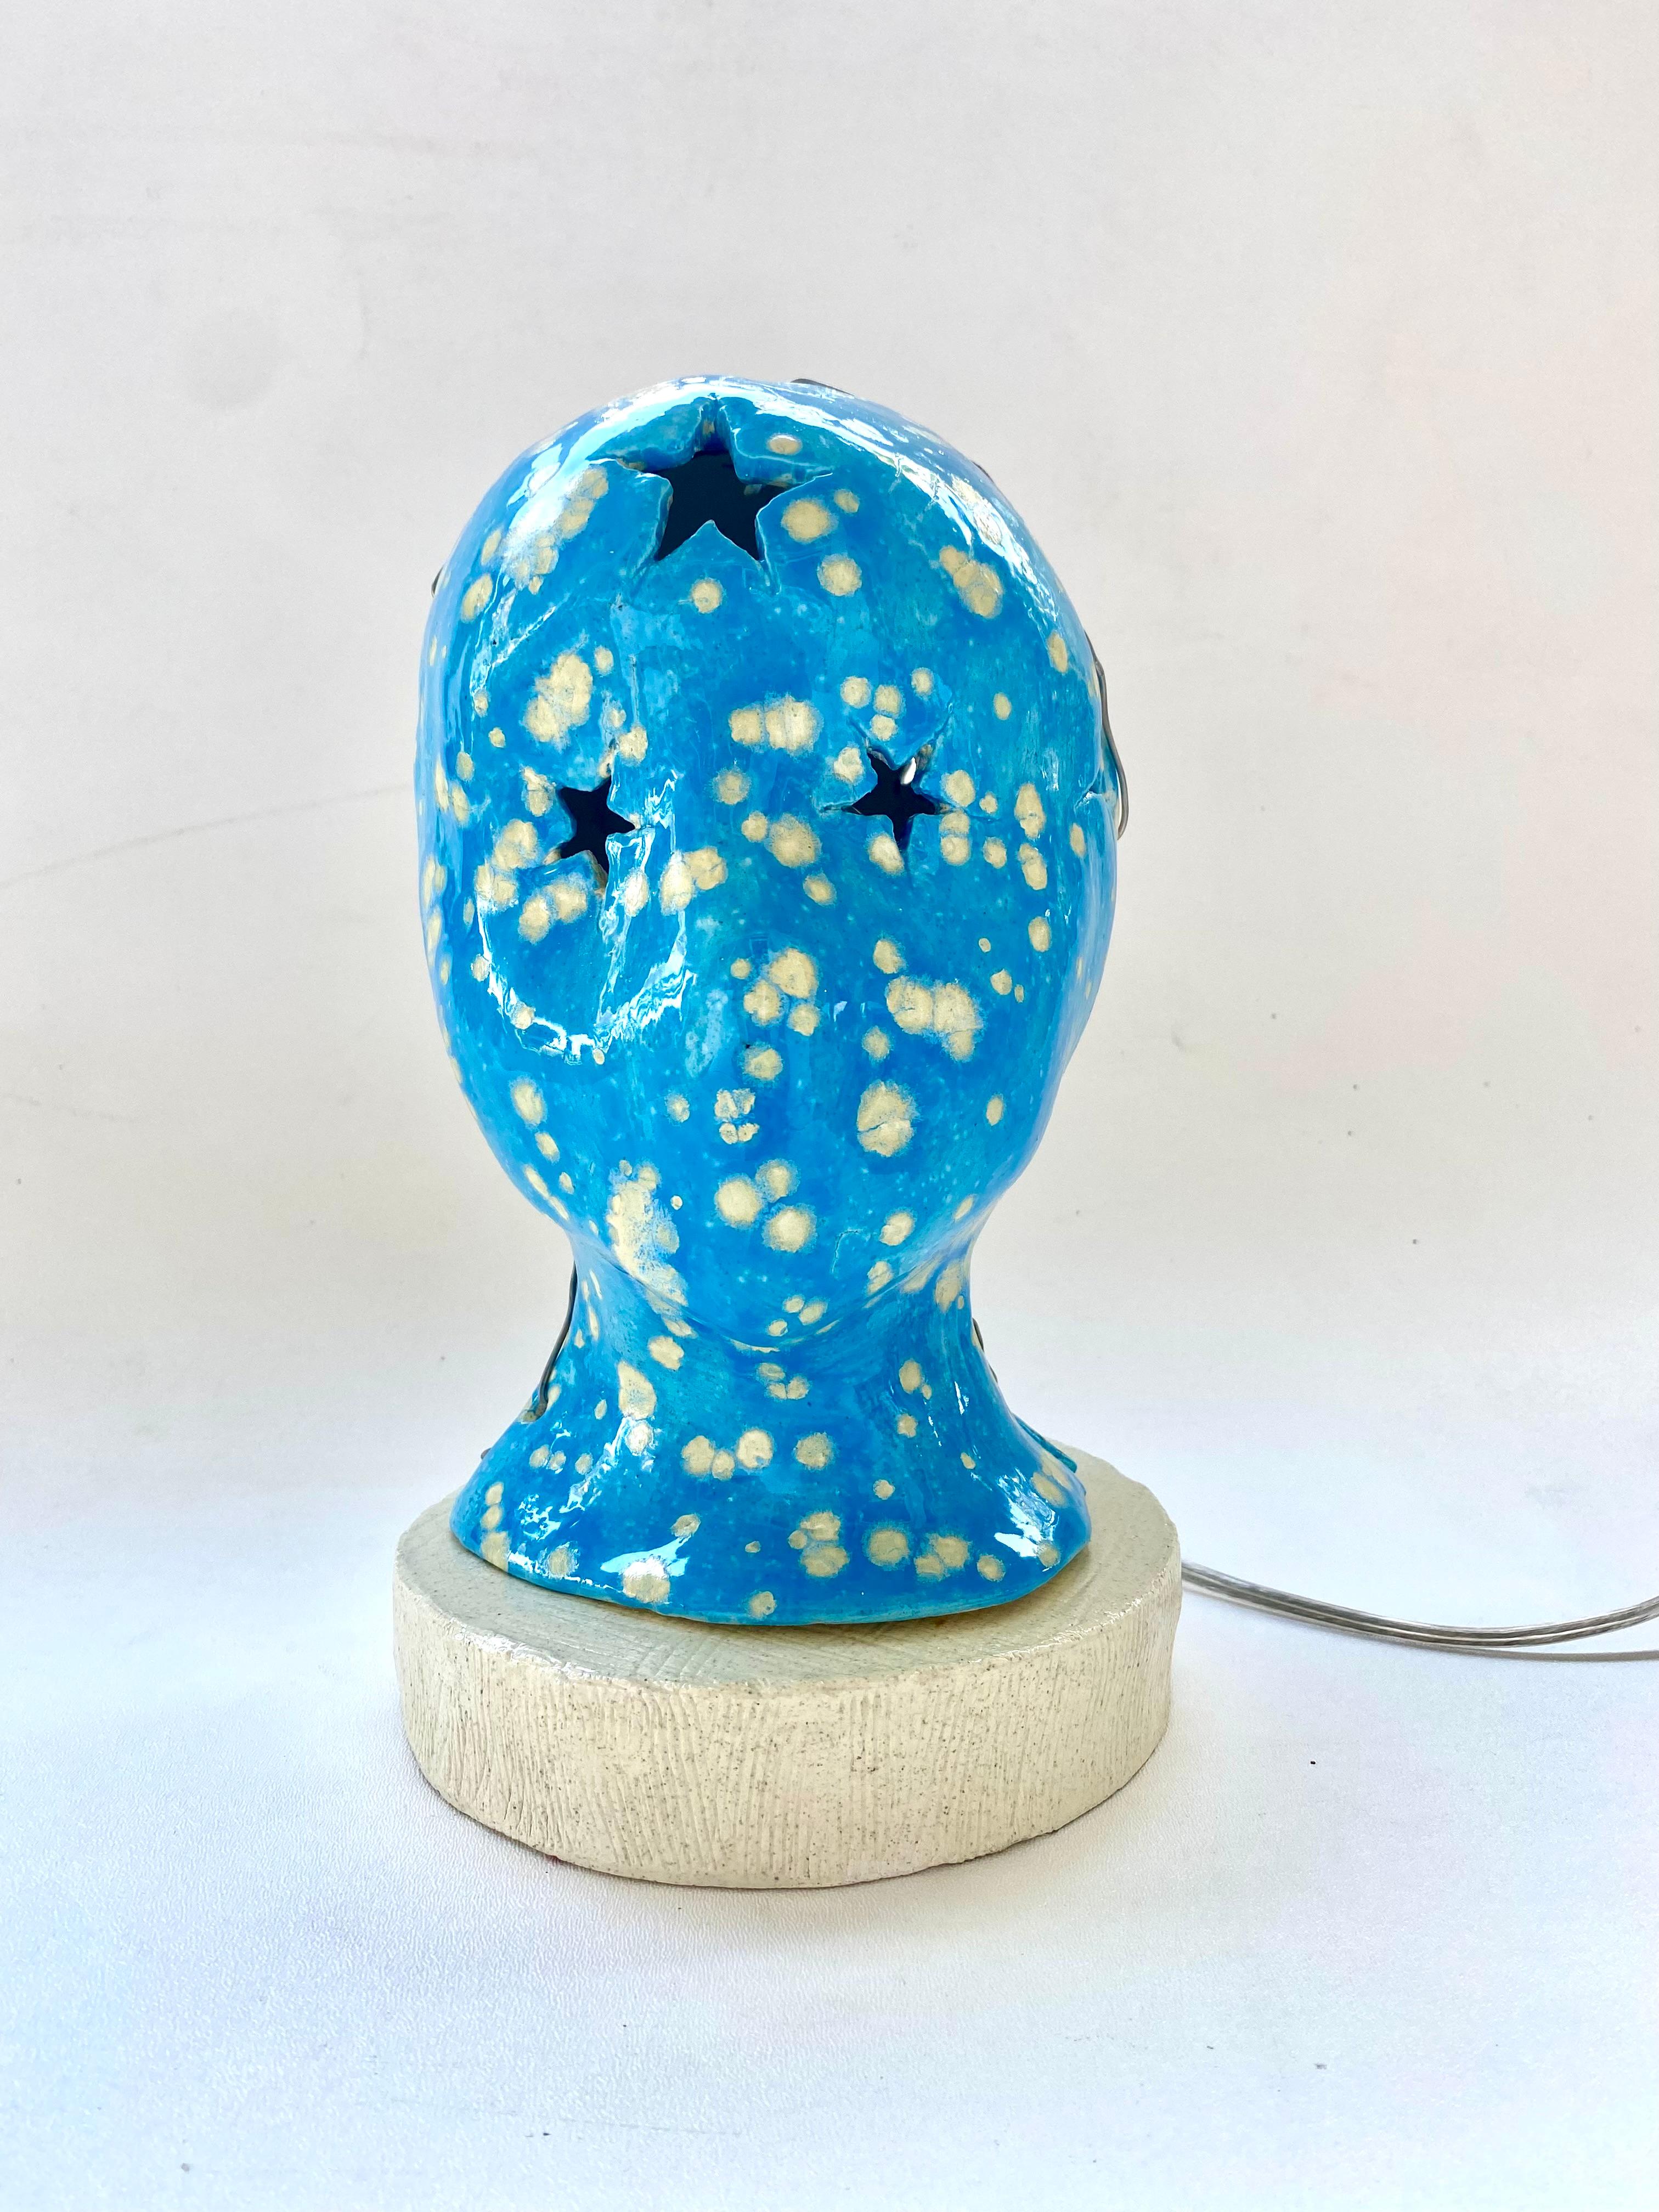 Handgefertigte glasierte Keramik-Nachtlampe

Zum Verkauf angeboten wird eine handgefertigte funktionale Kunstkeramik-Nachtlampe, die von Rexx Fischer signiert und datiert ist. Rexx ist ein Maler und Keramiker. Er ist der Sohn des Künstlers Warren